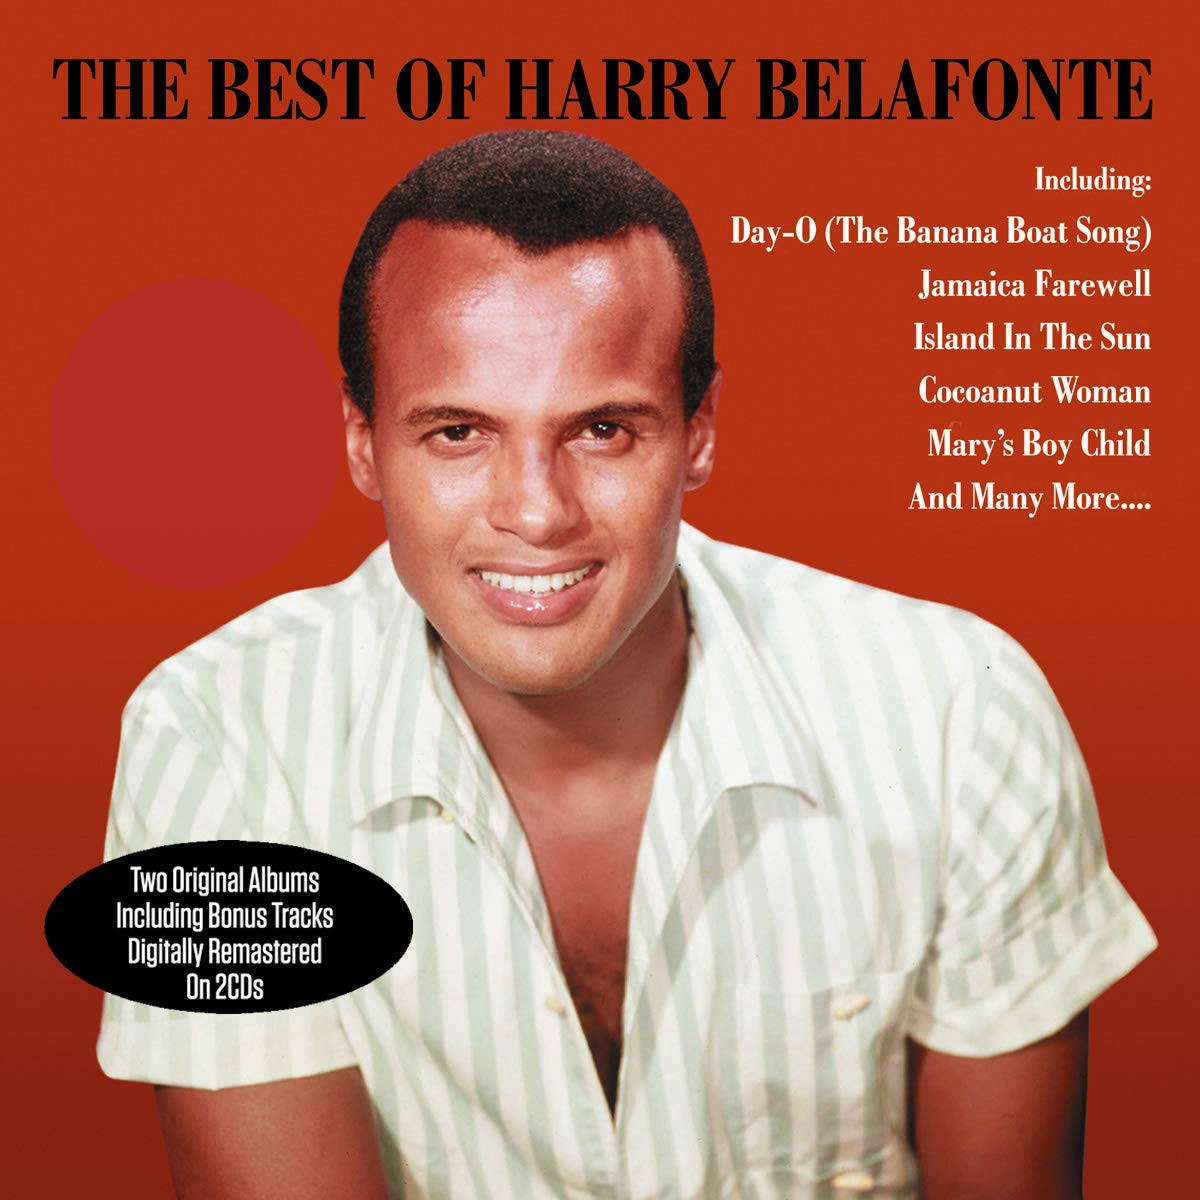 Opret et smukt tapet baggrundsbillede til din computer eller mobil af Harry Belafontes albumcover. Wallpaper